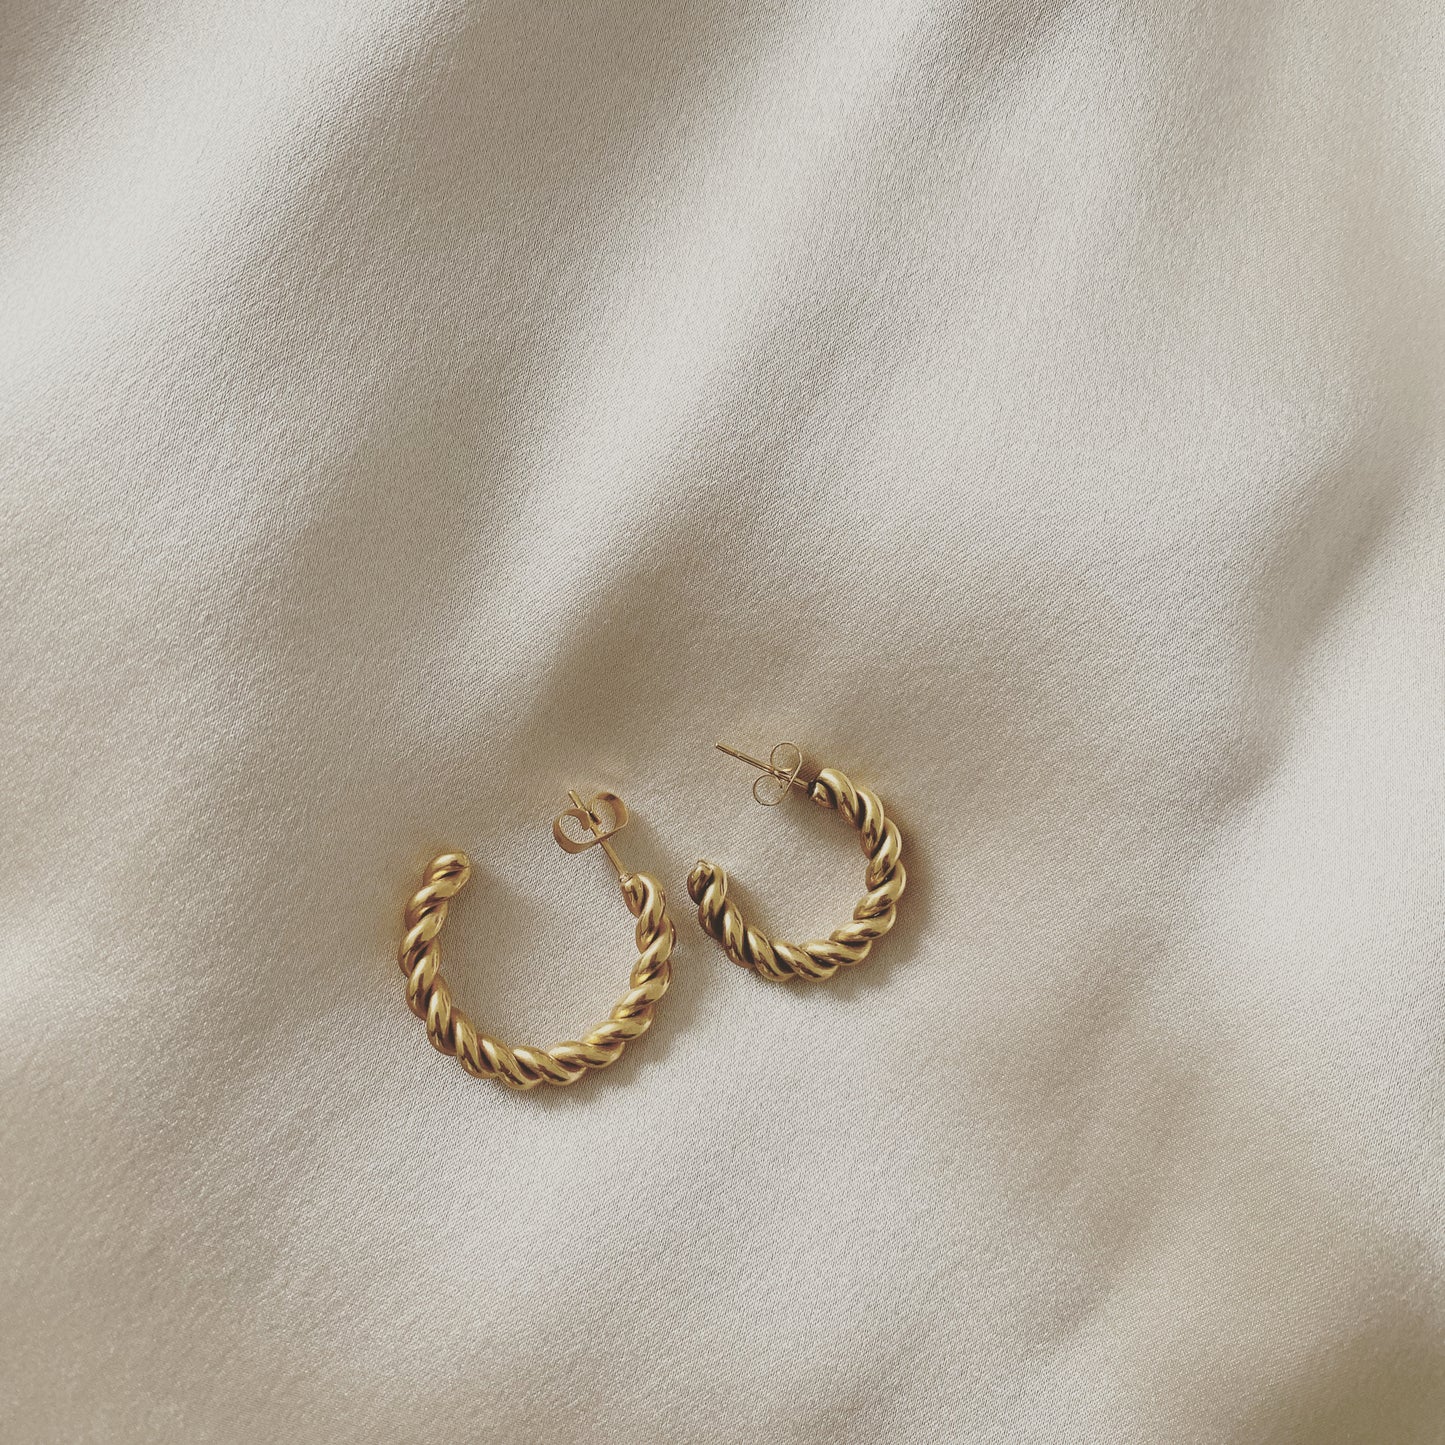 Brielle twisted hoop earrings